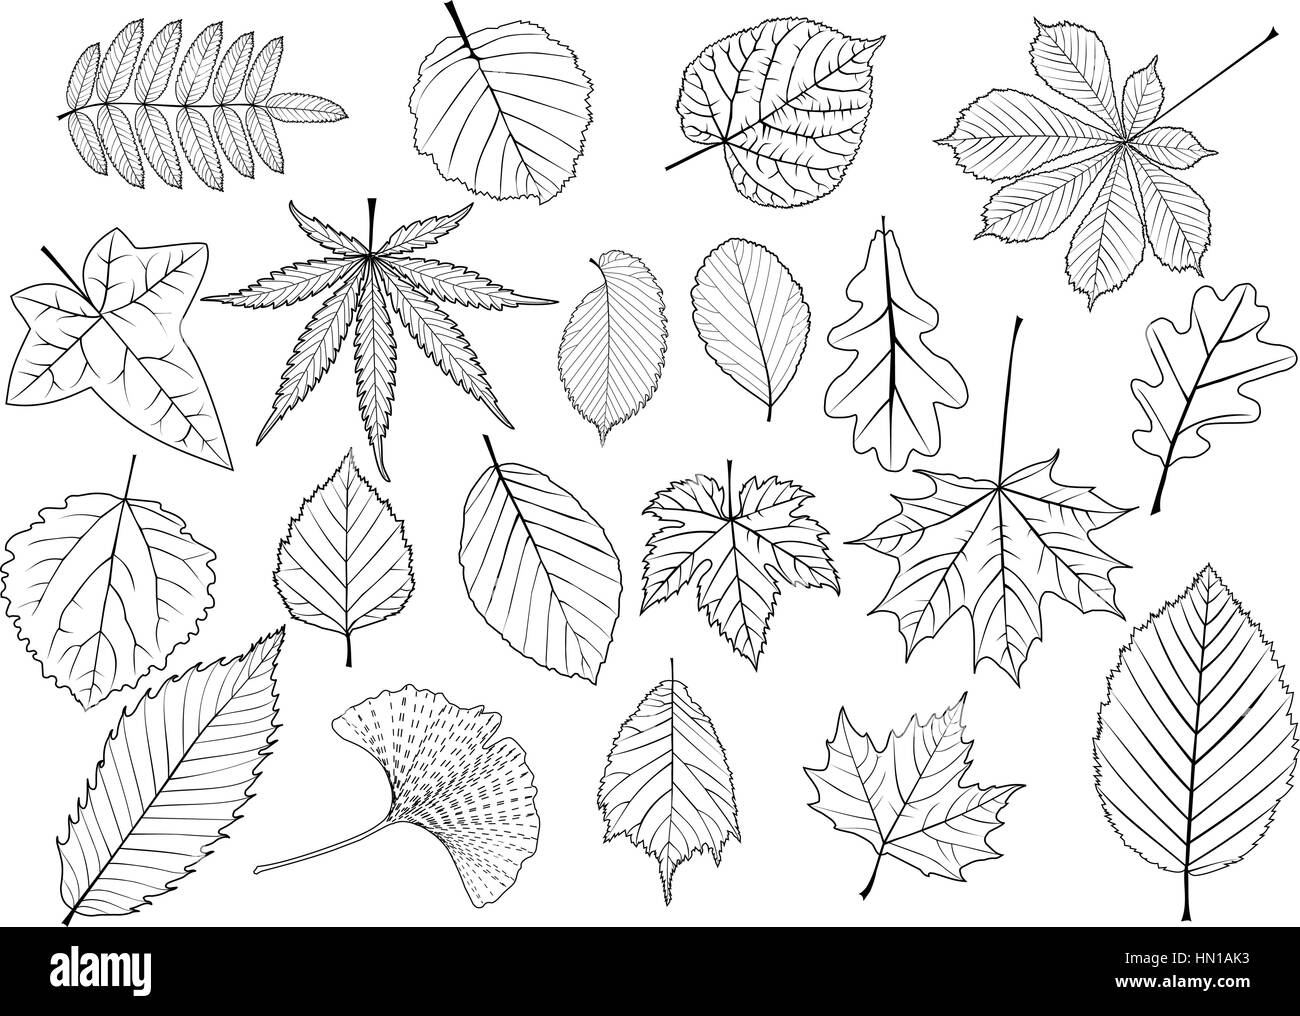 Les feuilles des arbres, feuilles, silhouettes Illustration de Vecteur